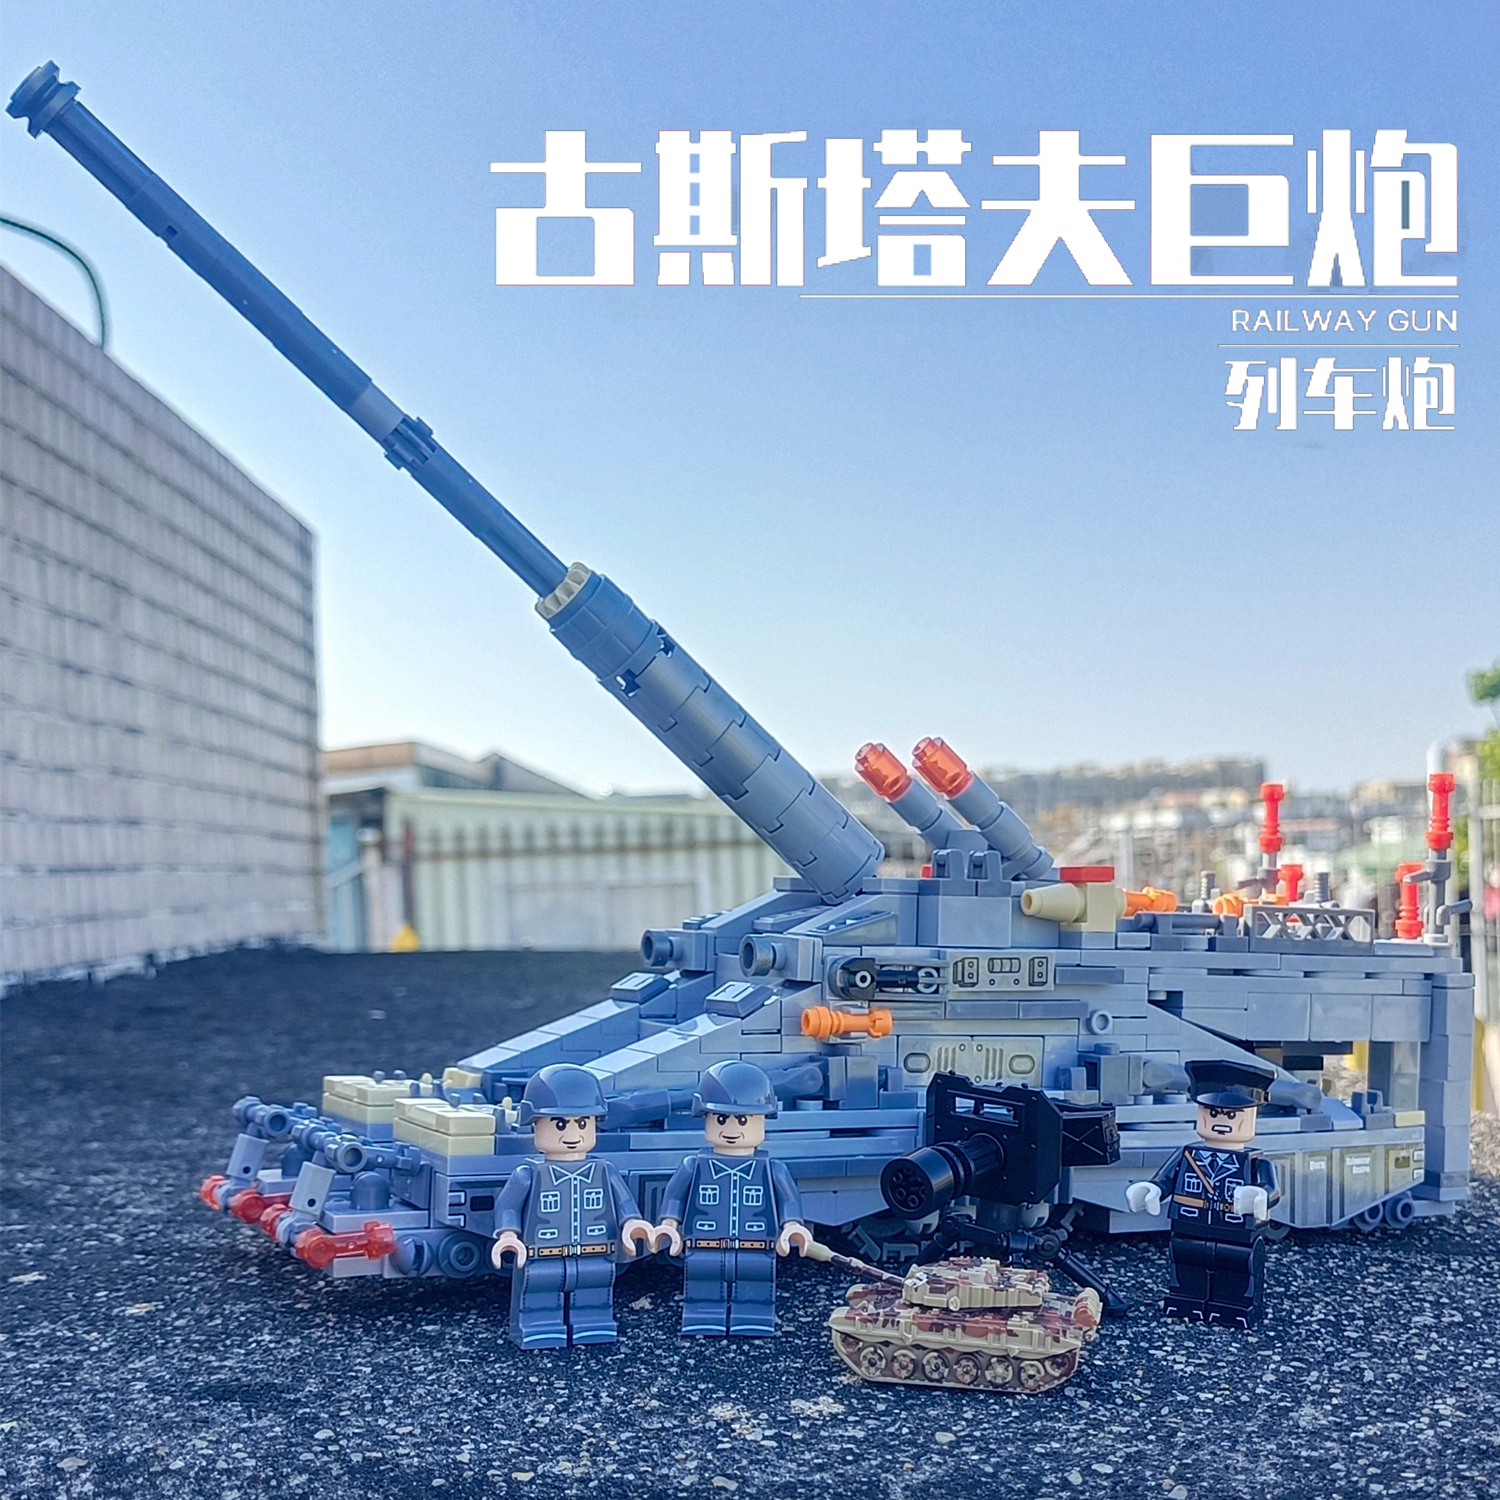 中国积木军事二战德国火炮古斯塔夫巨炮列车模型益智拼装玩具礼物